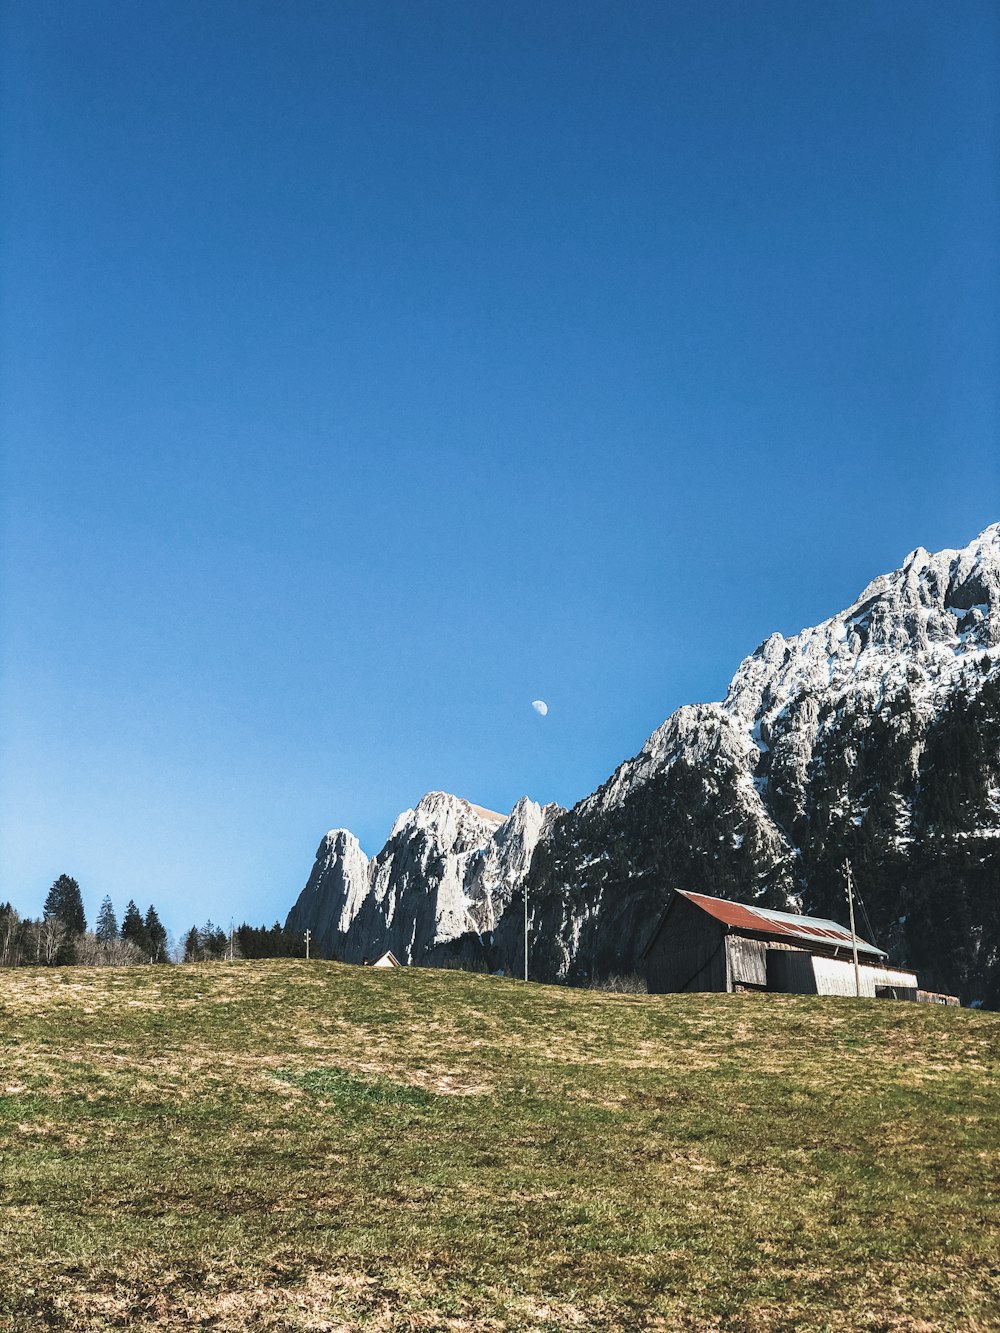 maison blanche et brune sur le champ d’herbe verte près de la montagne rocheuse grise sous le ciel bleu pendant